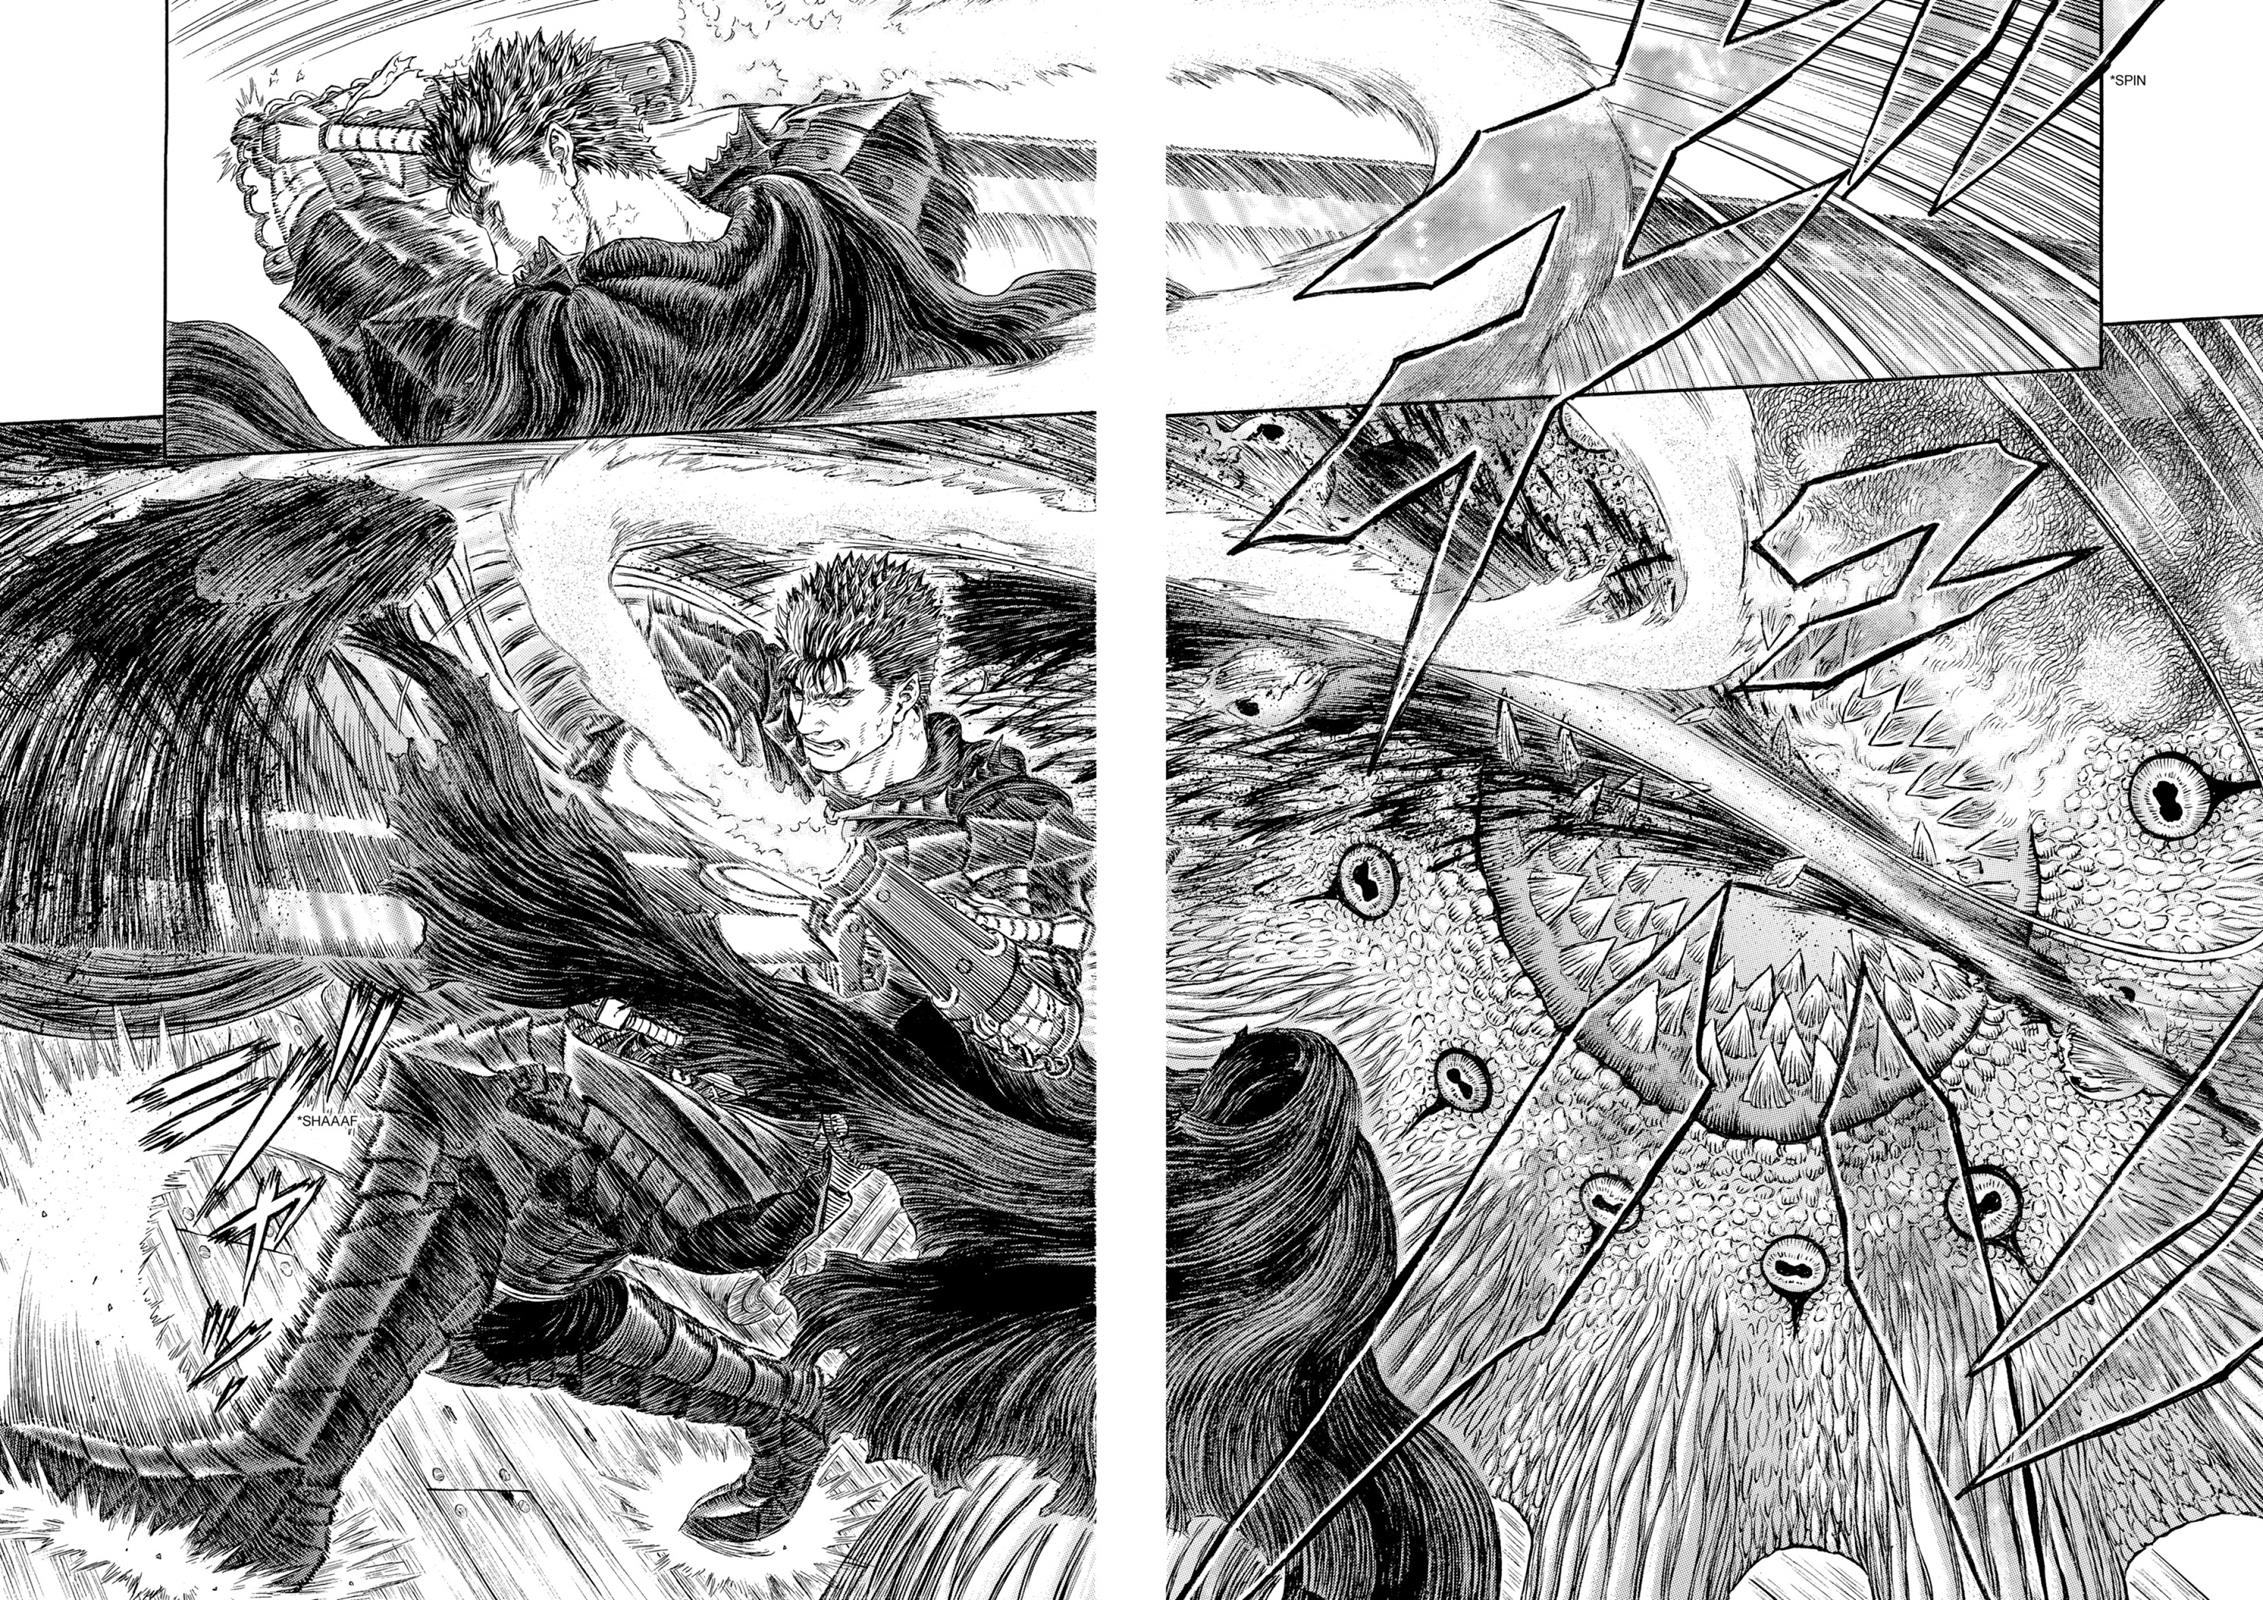 Berserk Manga Chapter 310 image 12